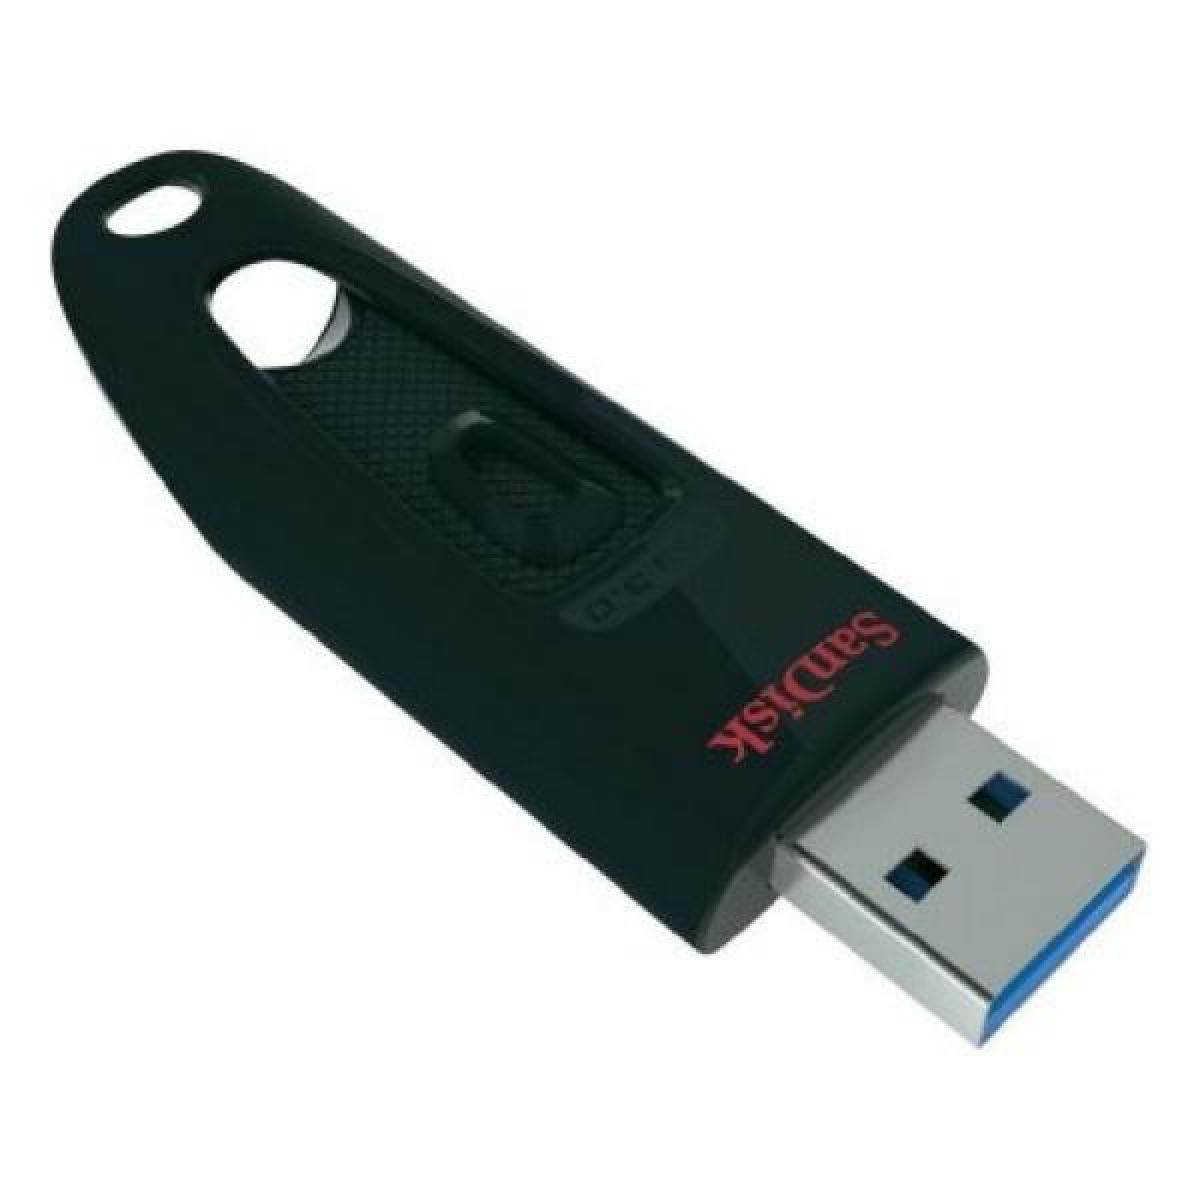 Totalcadeau - Clé USB 3.0 32 Go Capacité - 64 GB - Clés USB